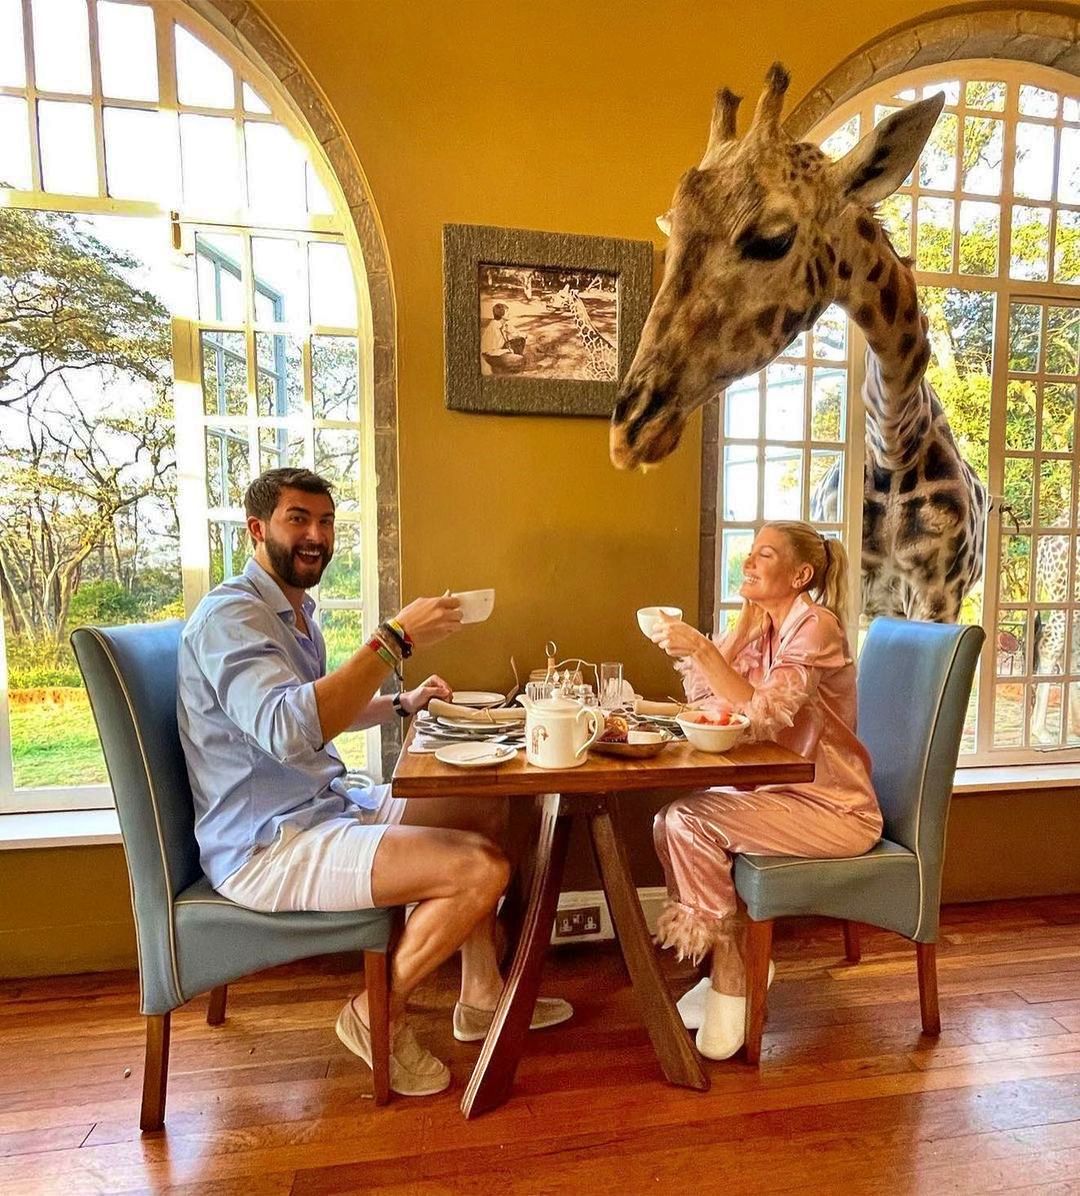 Giraffe Manor, Nairobi, Kenya